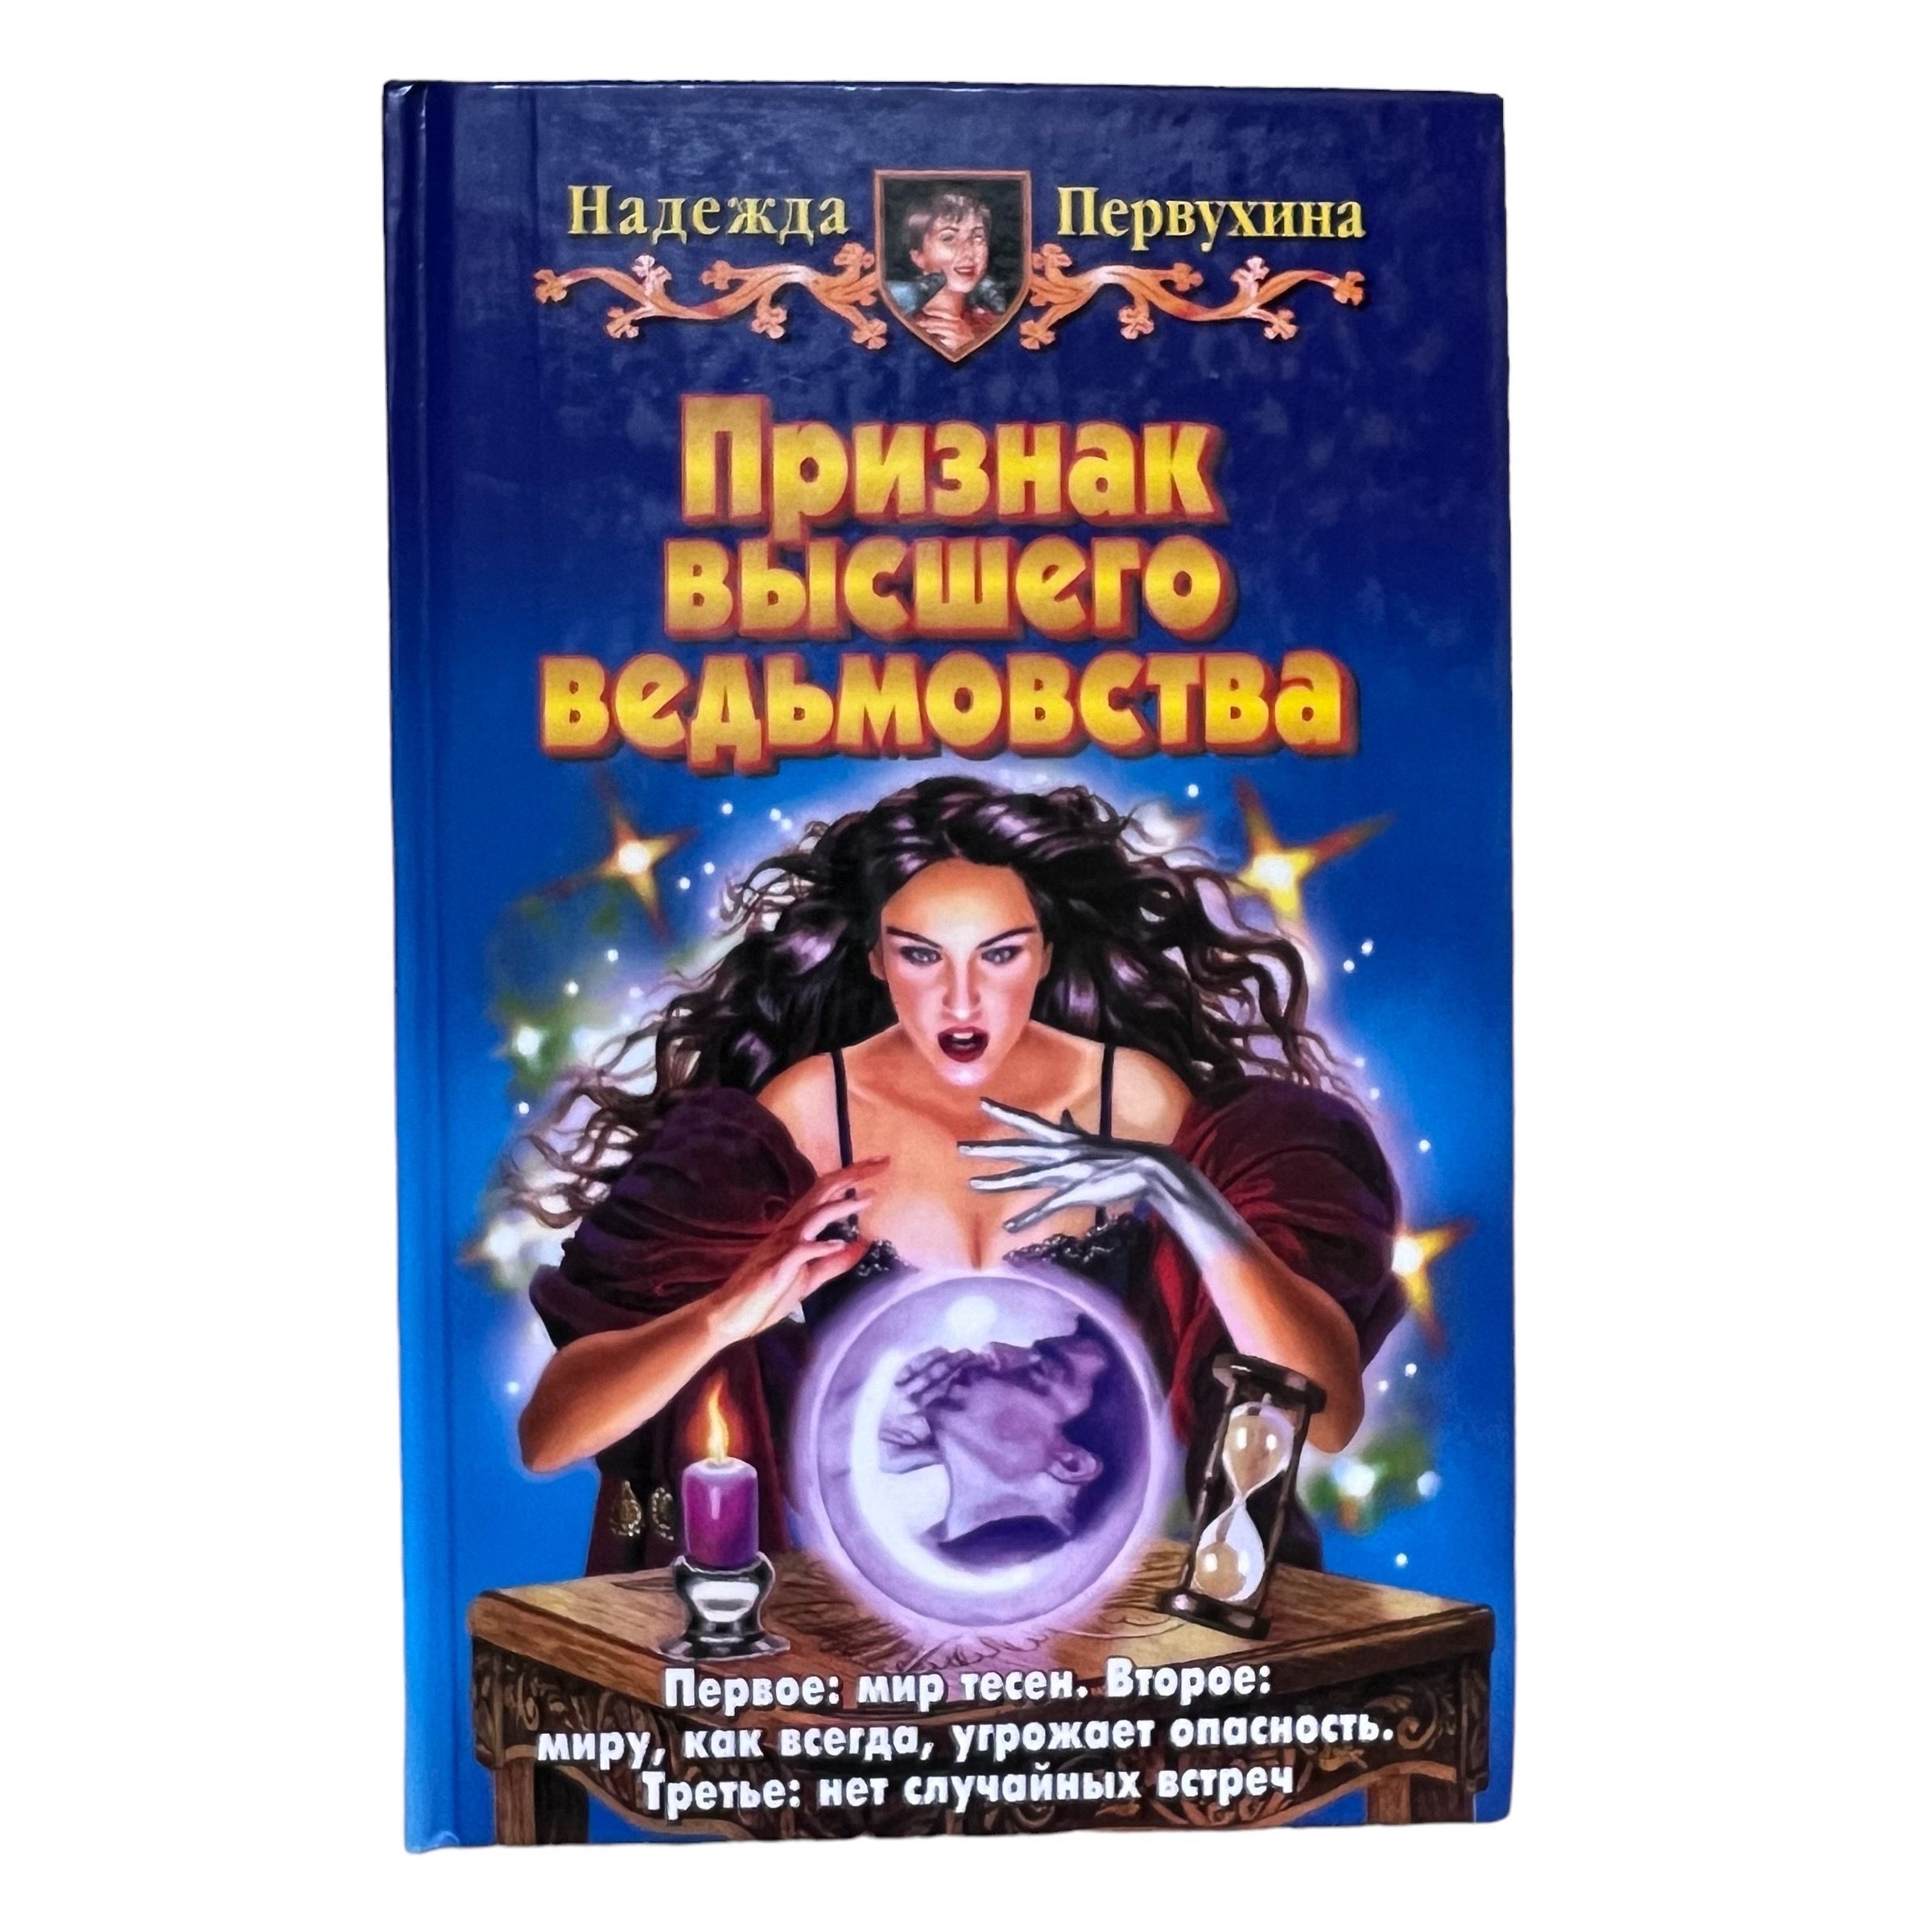 Слушать аудиокнигу первухина ученик 1. Купить в Новосибирске книгу Петербург для детей Первухина.